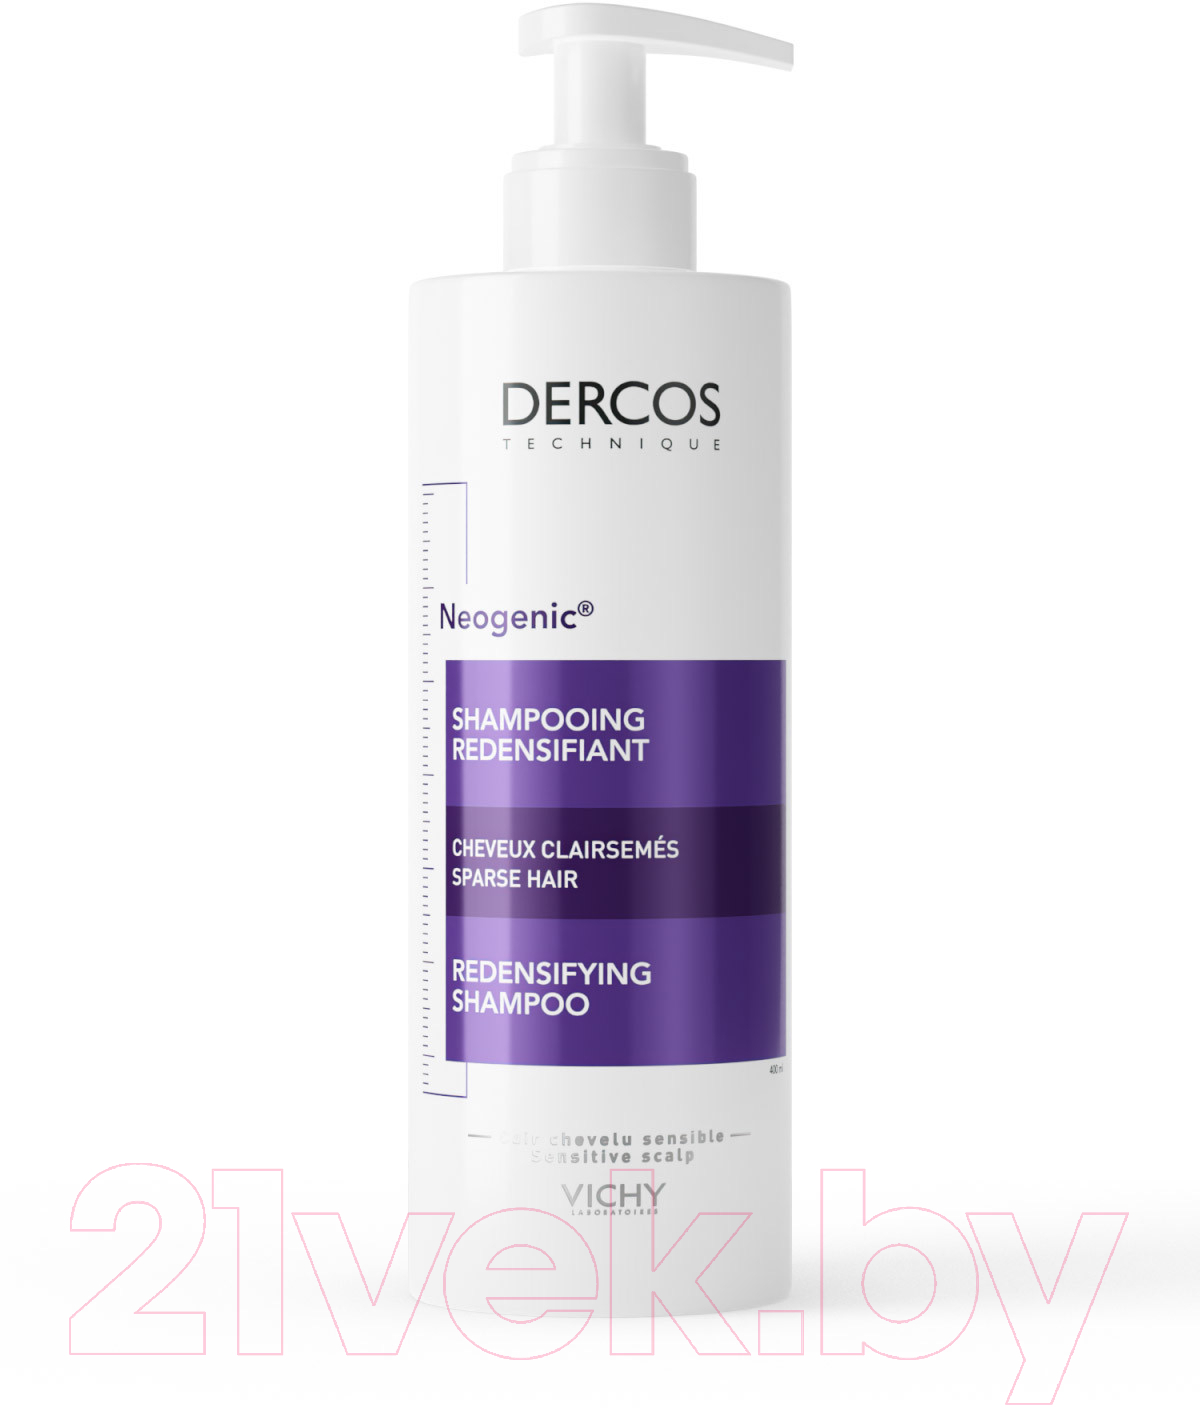 Шампунь для волос Vichy Dercos Neogenic для повышения густоты волос